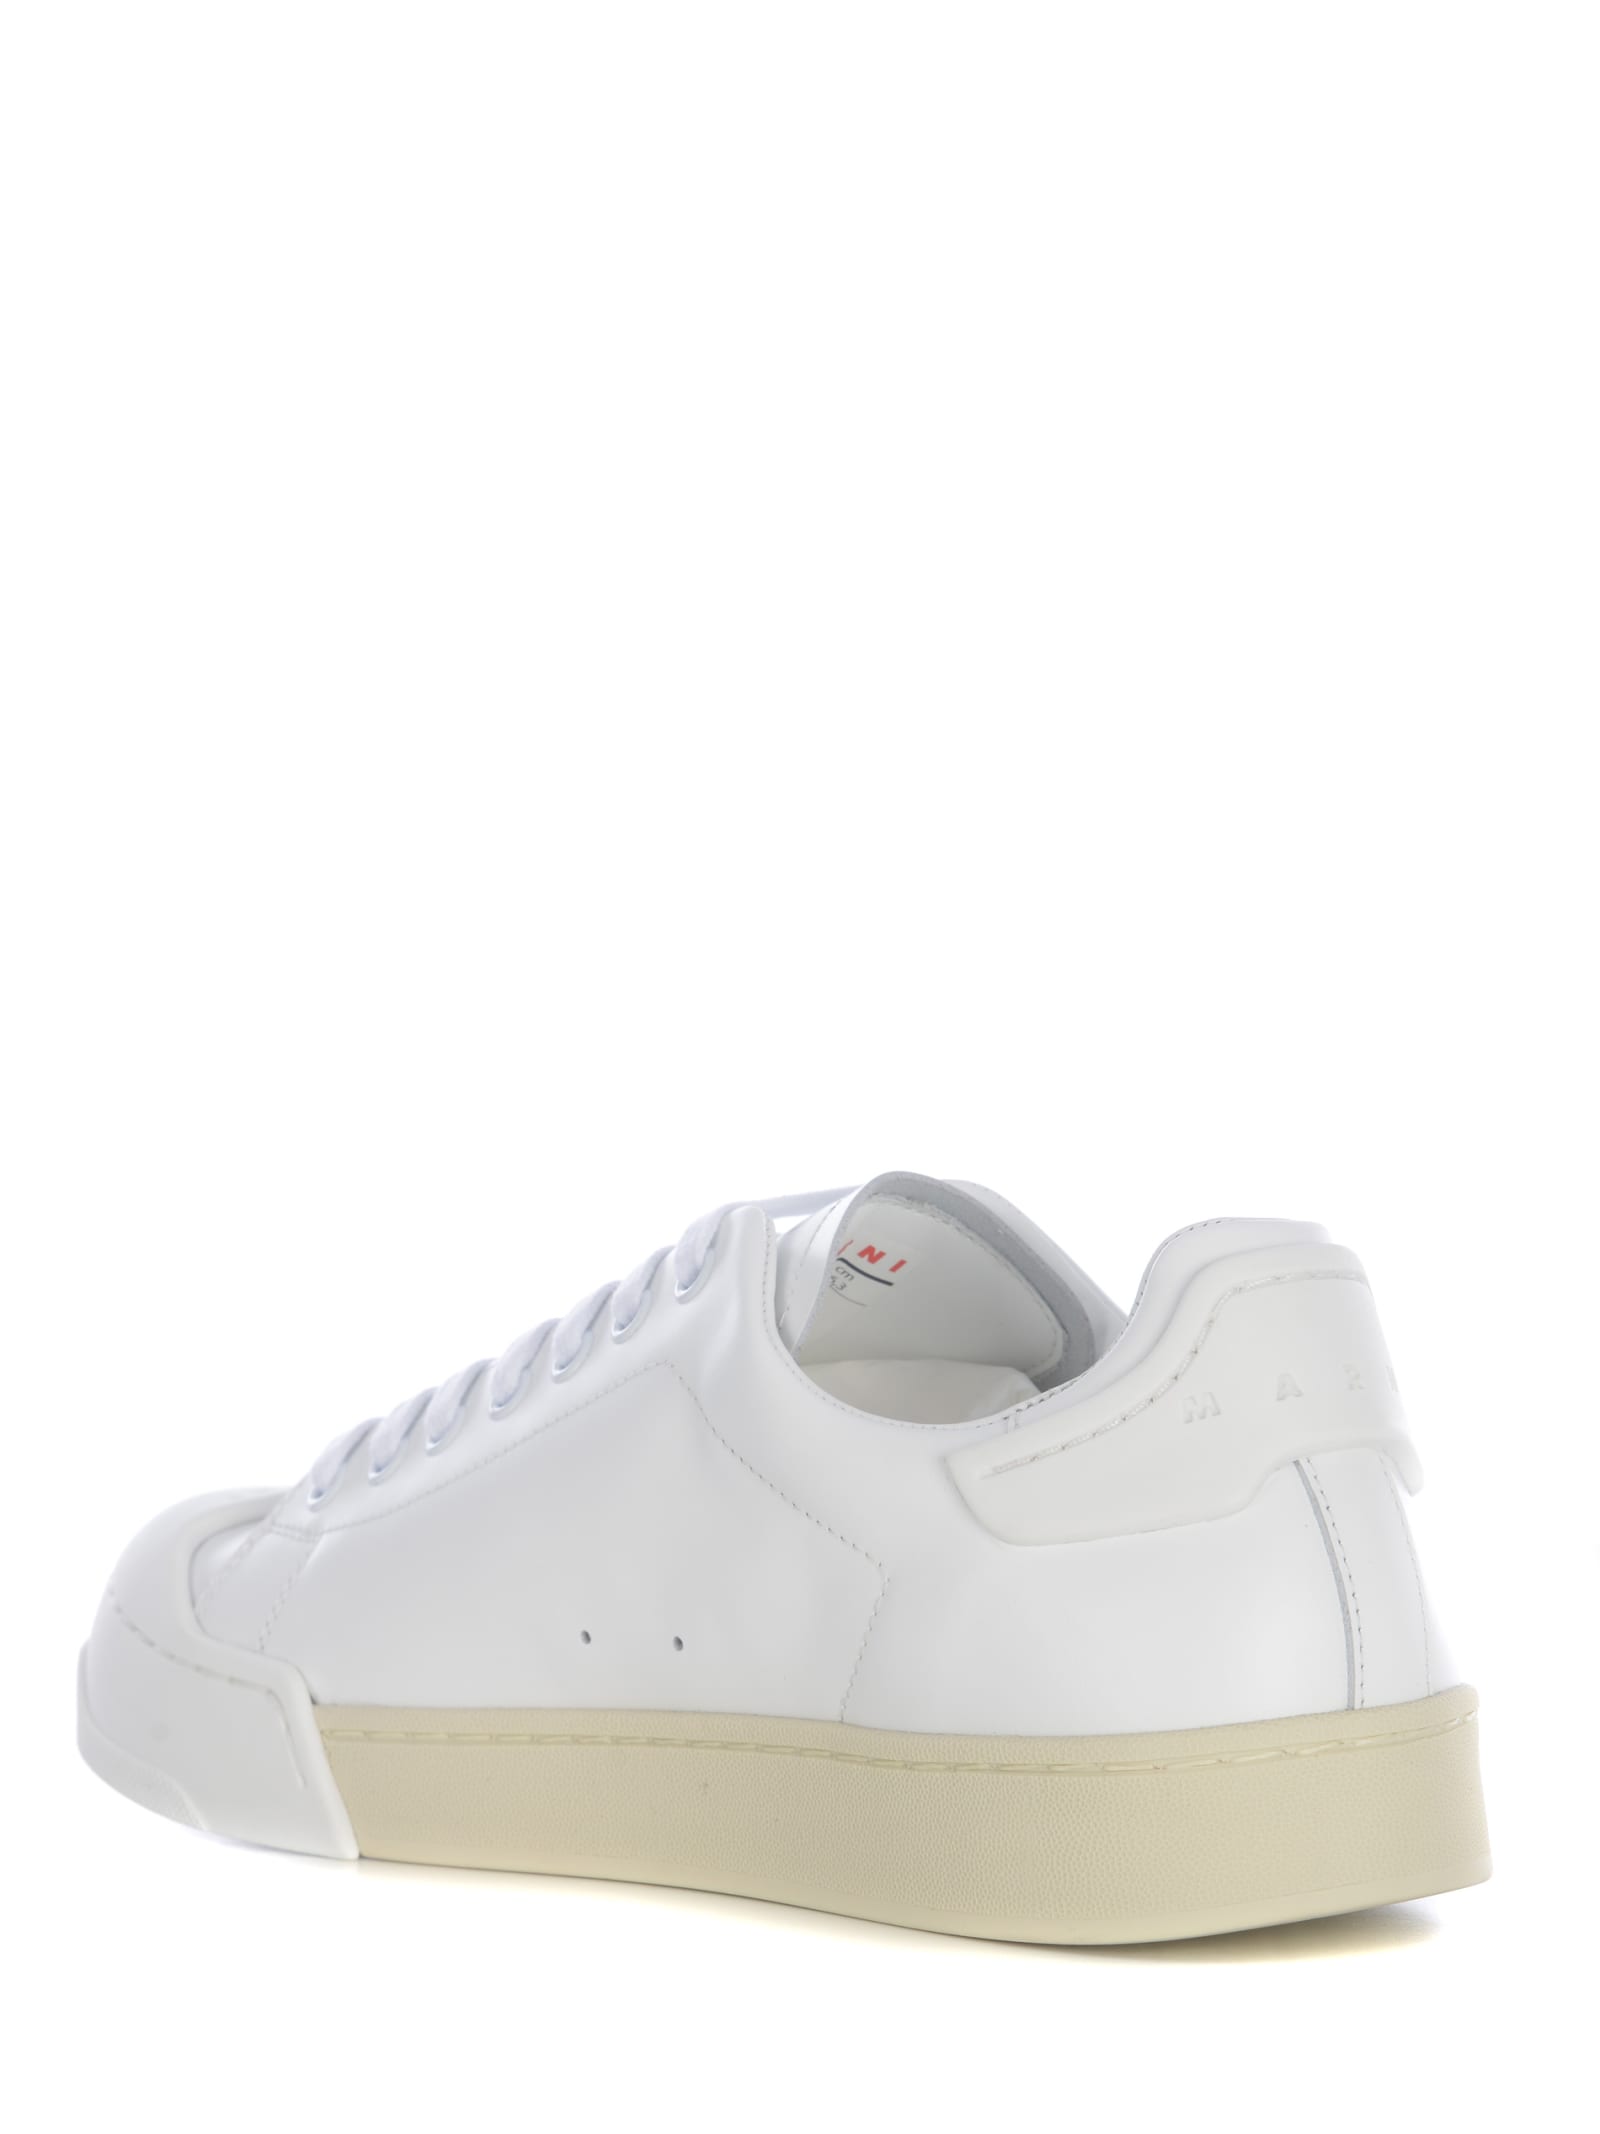 Shop Marni Sneakers  Dada Made Of Nappa In Bianco